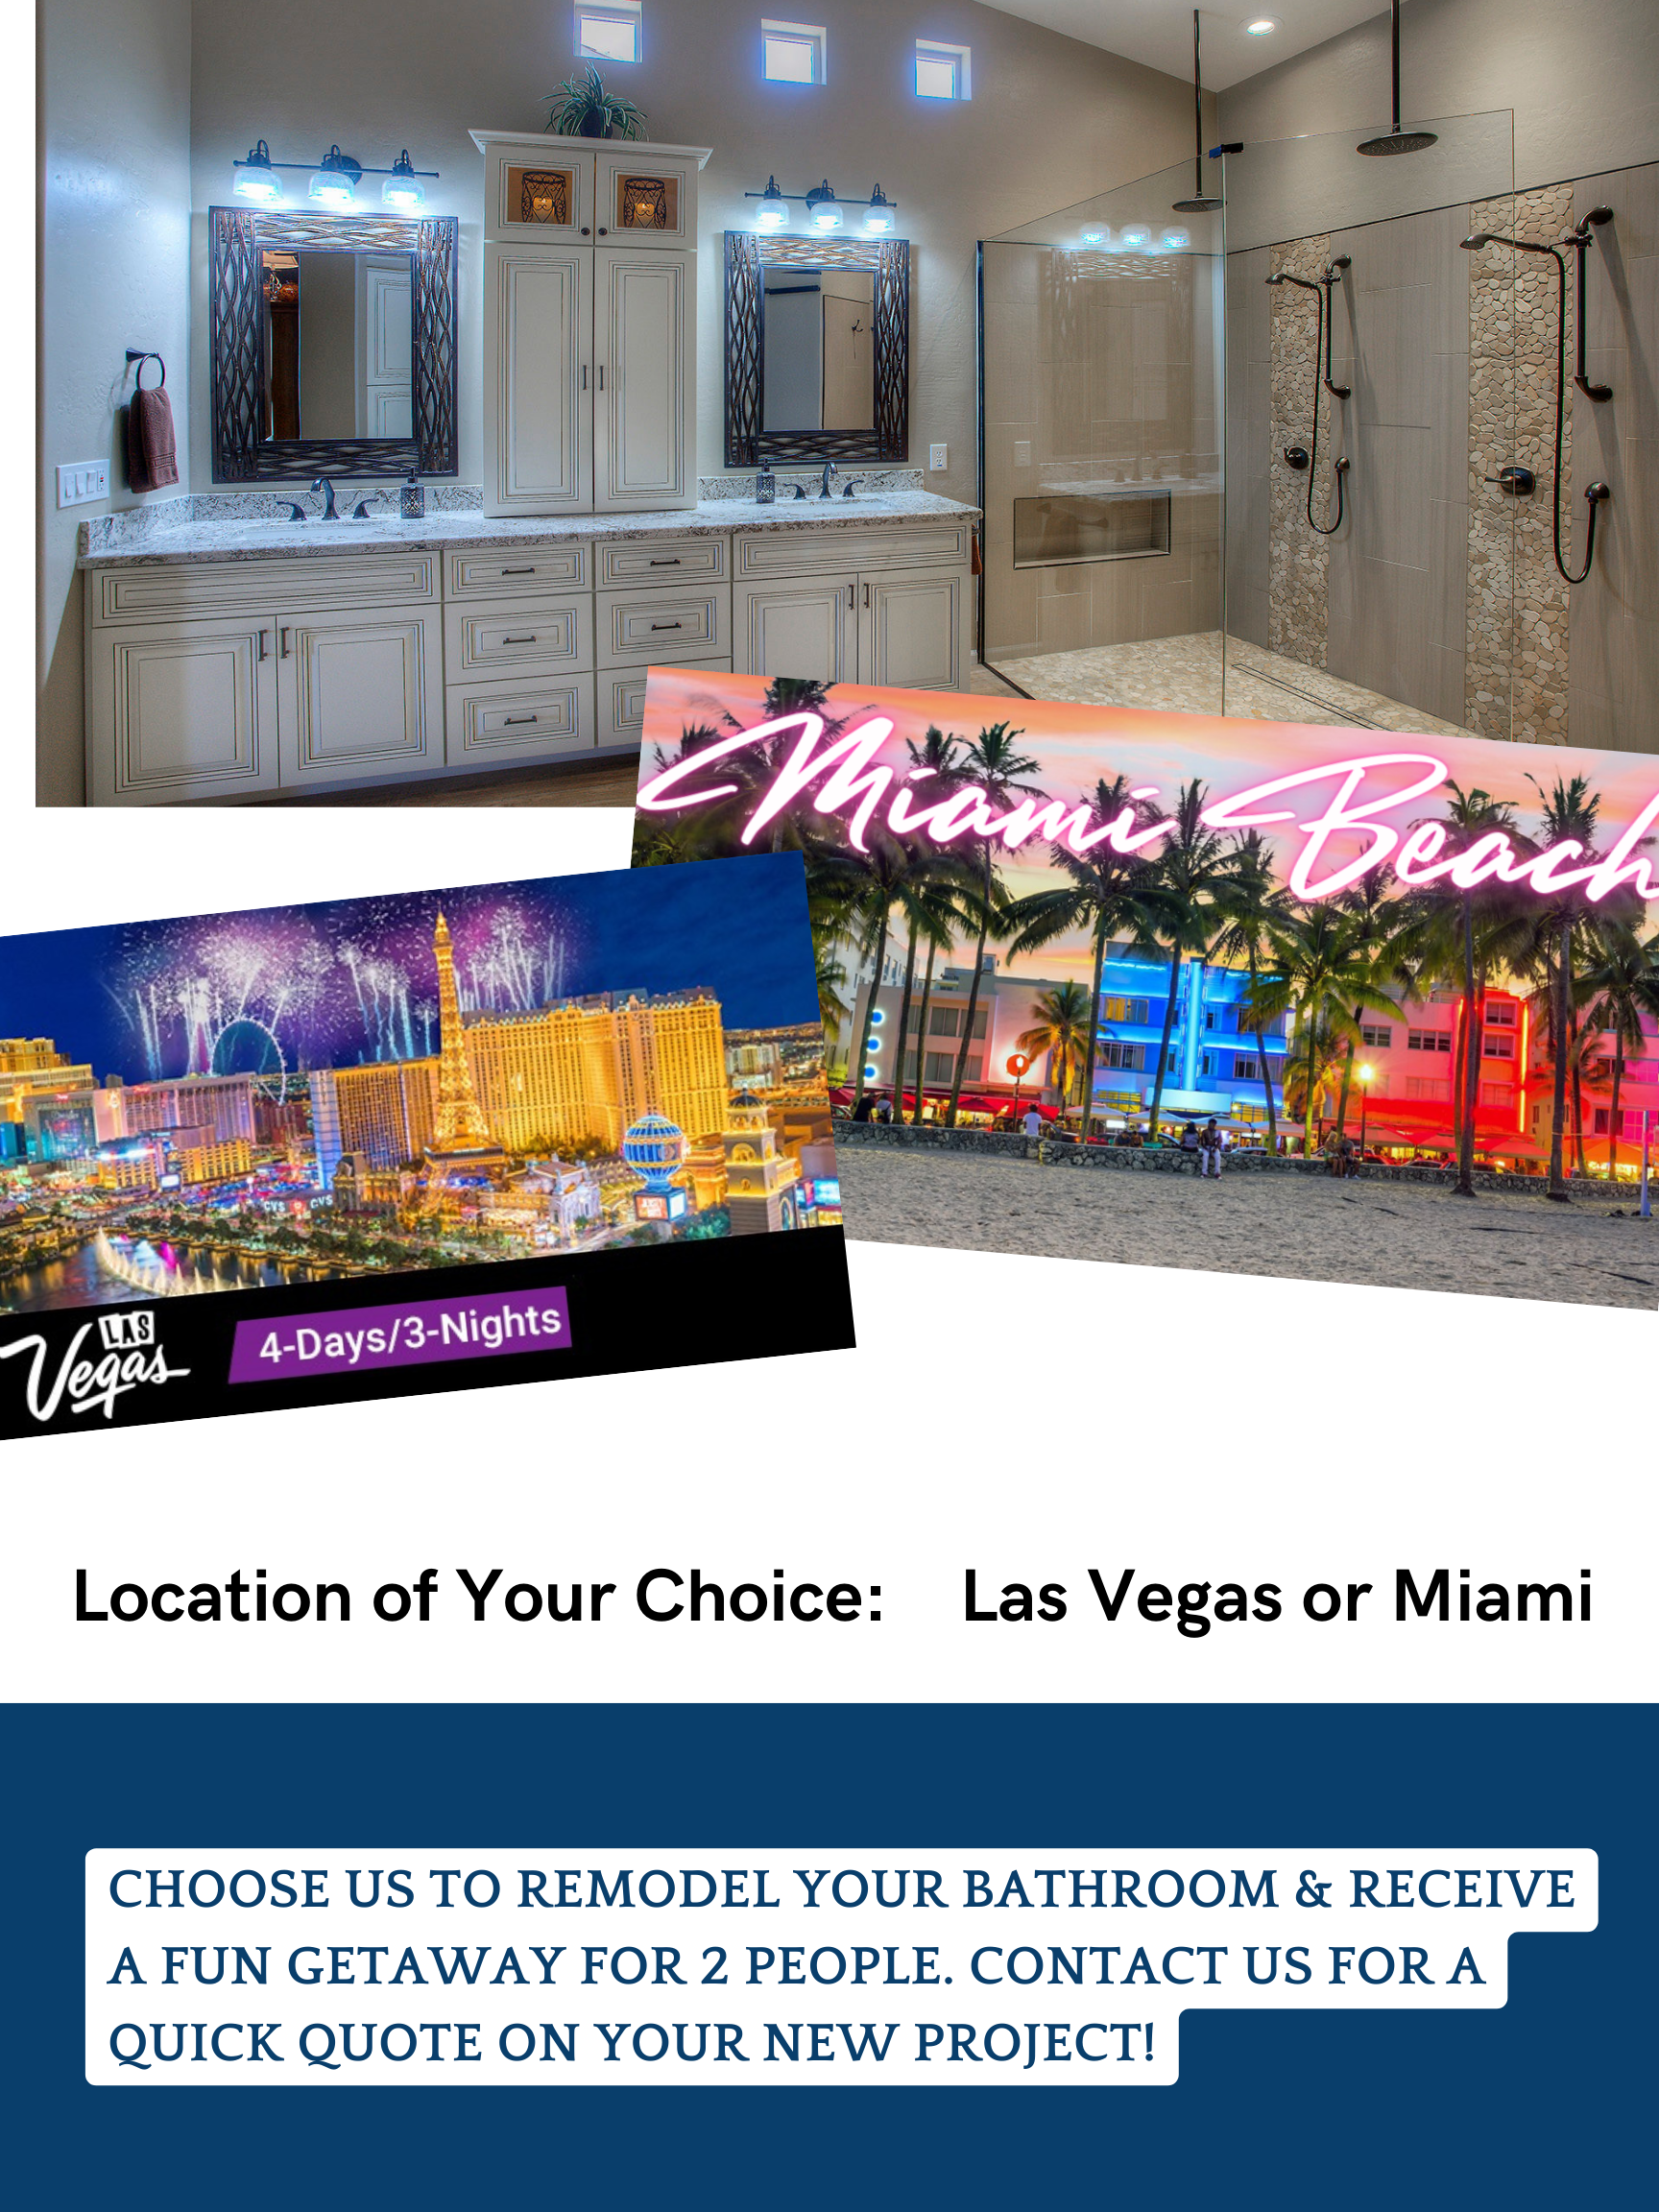 Bathroom Remodel & Renovation - Orlando